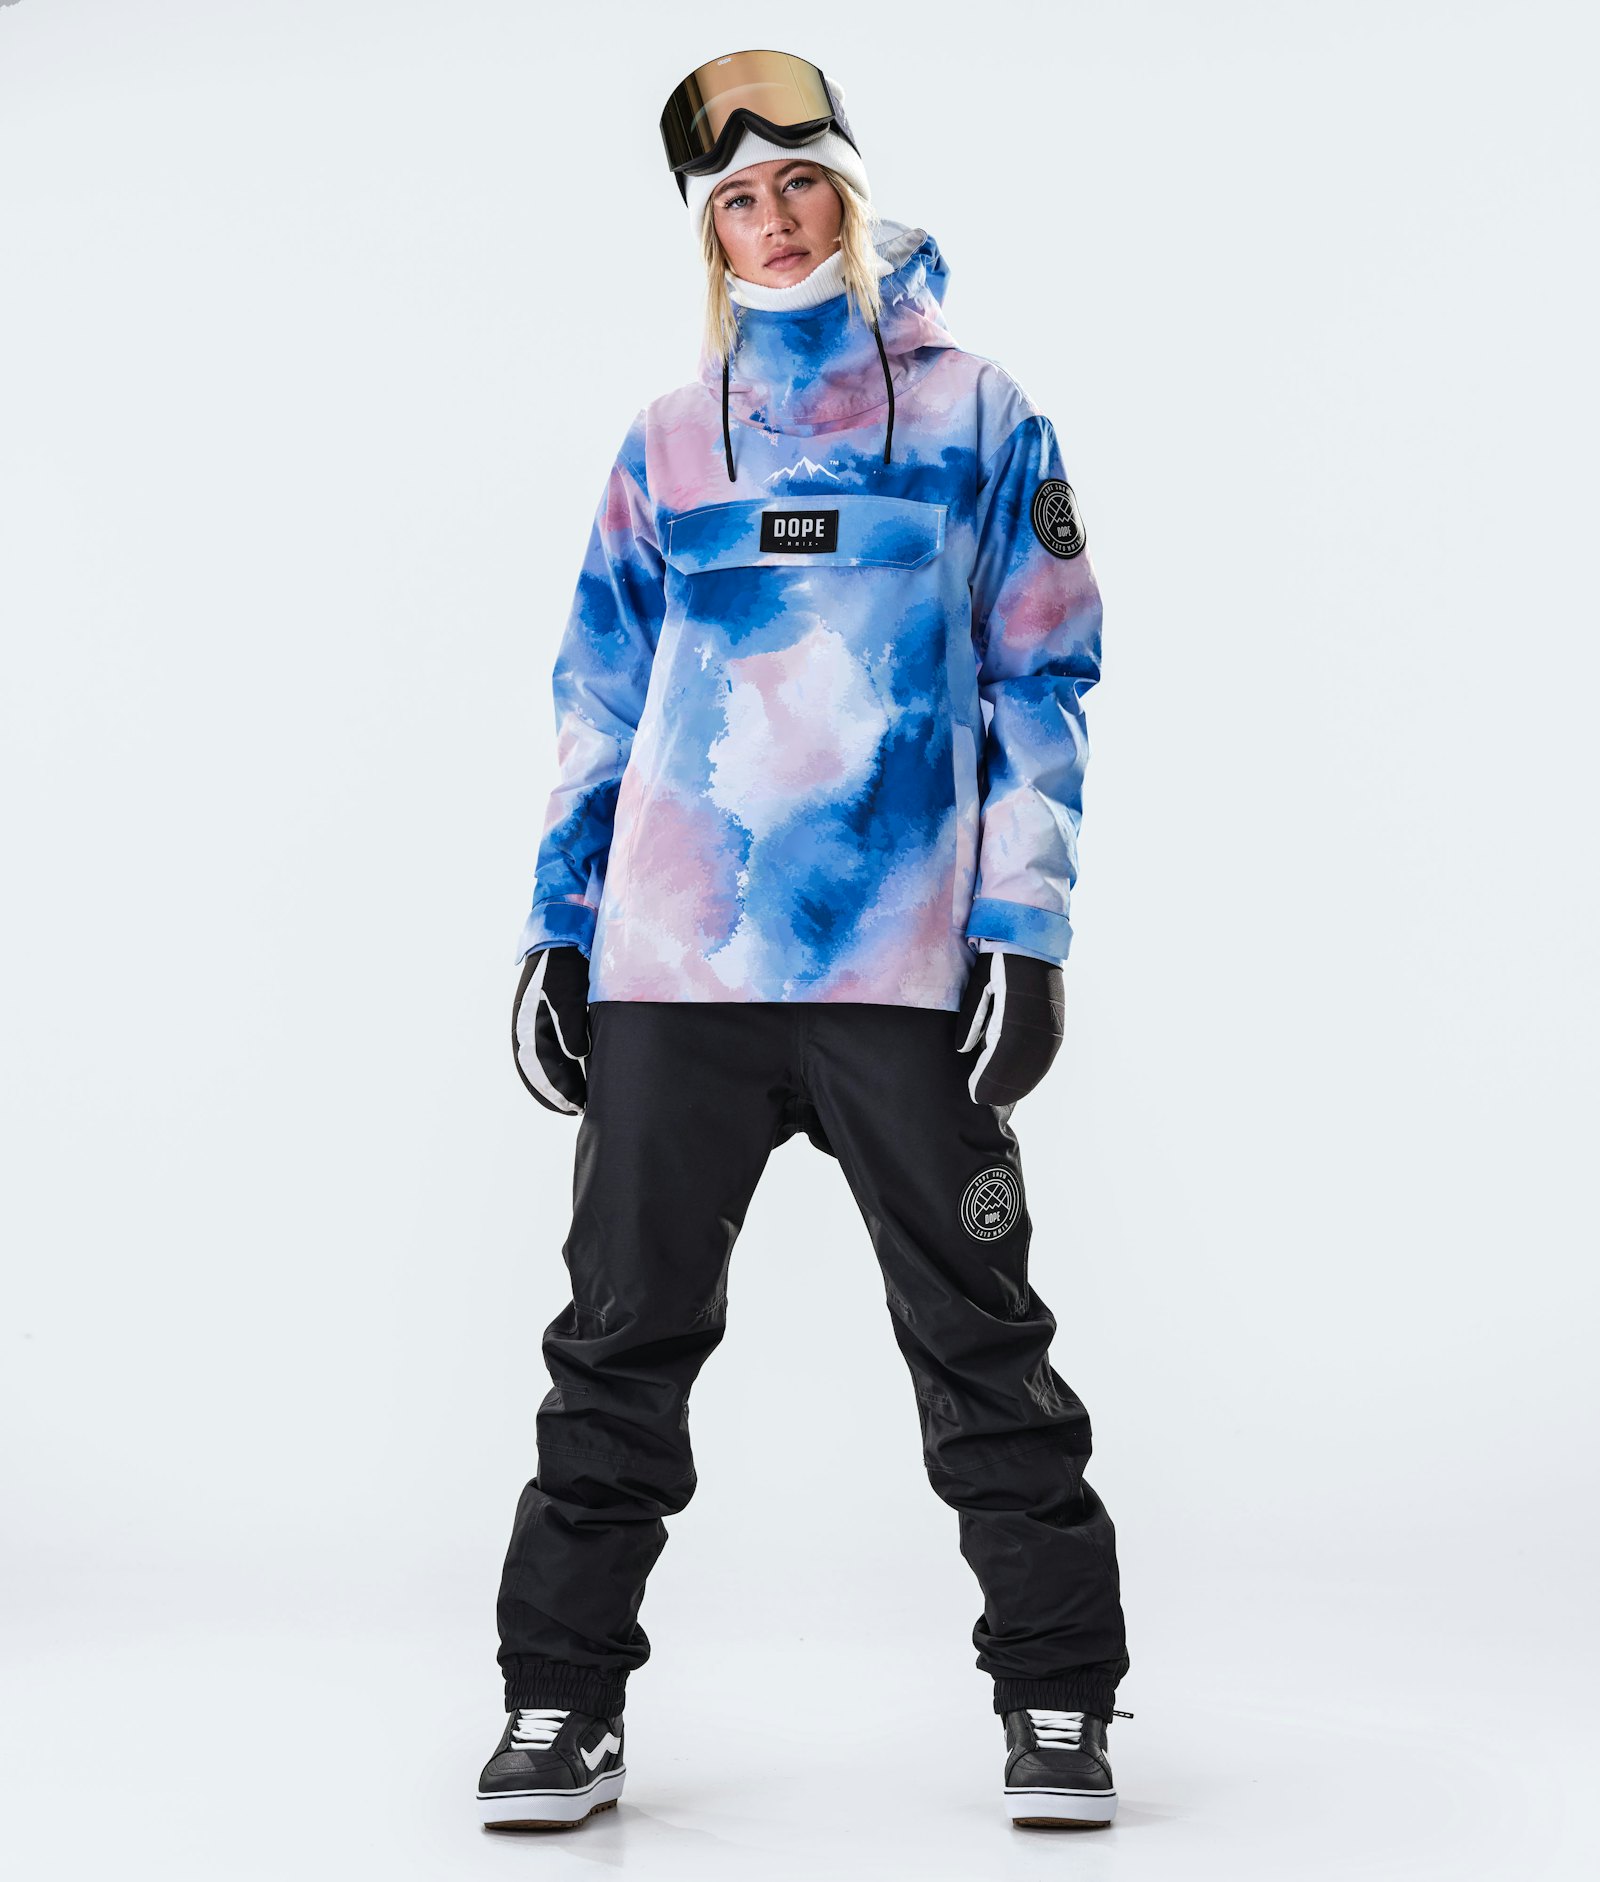 Blizzard W 2020 Snowboard Jacket Women Cloud